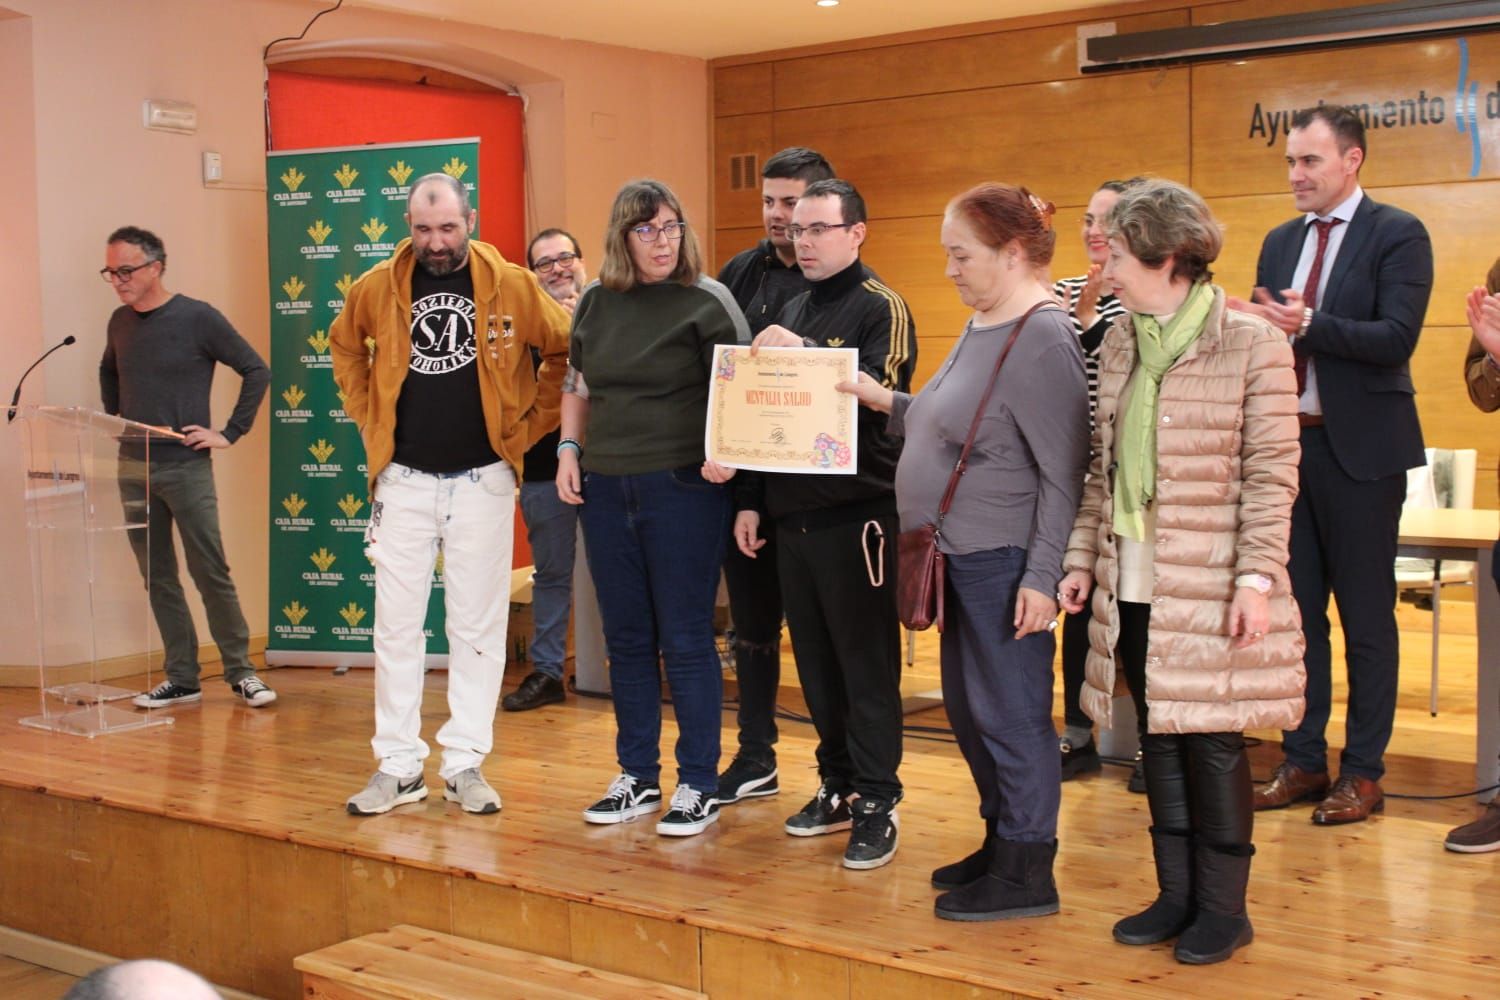 Así fue la entrega de premios del concurso de Huevos Pintos en Sama de Langreo